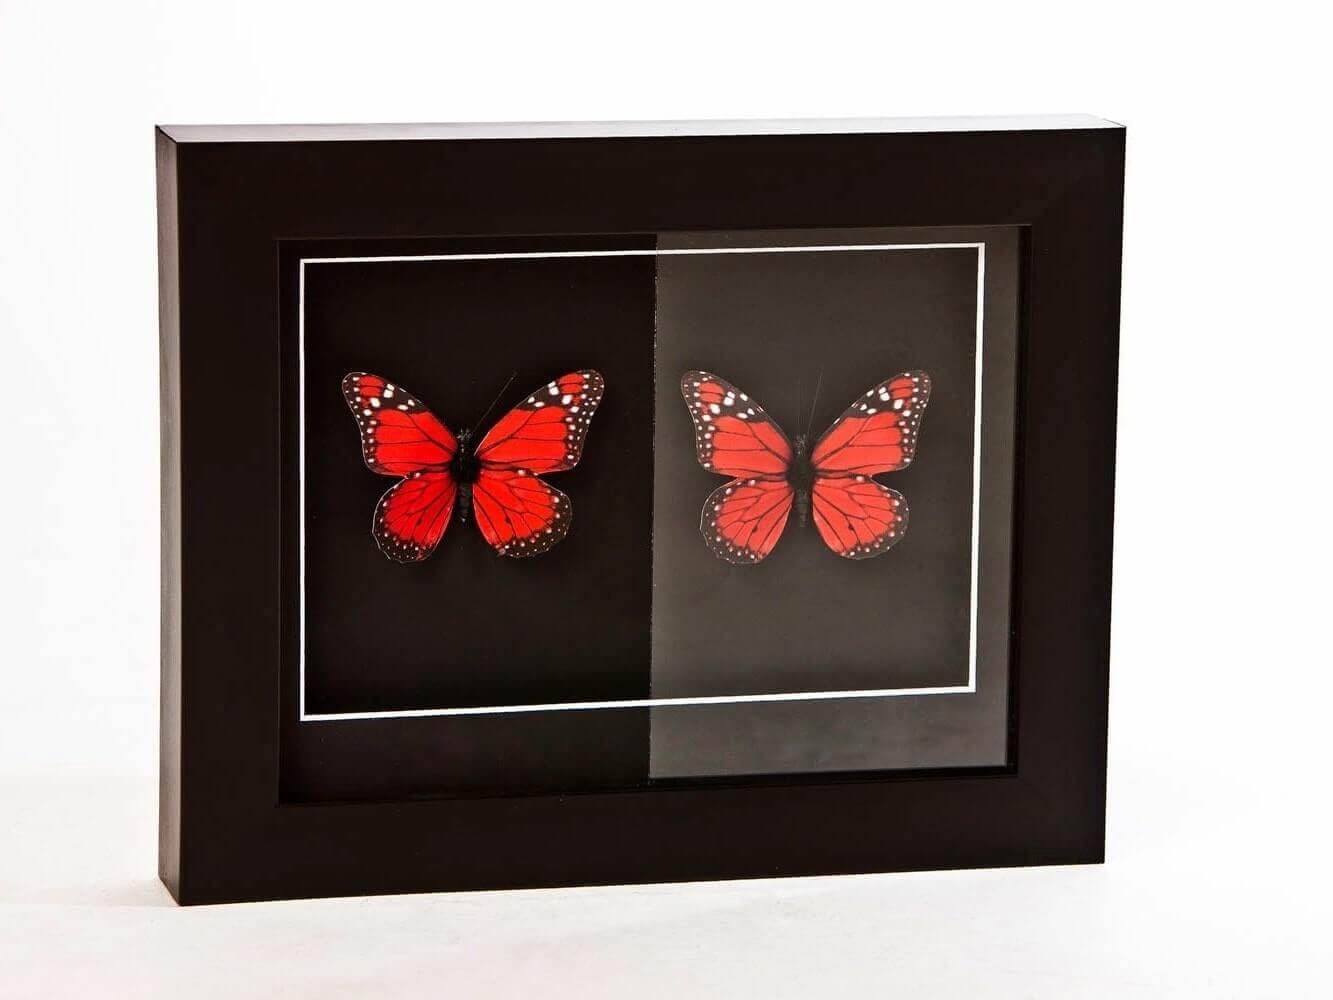 kelebeklerle örneklendirilen anti reflekte cam